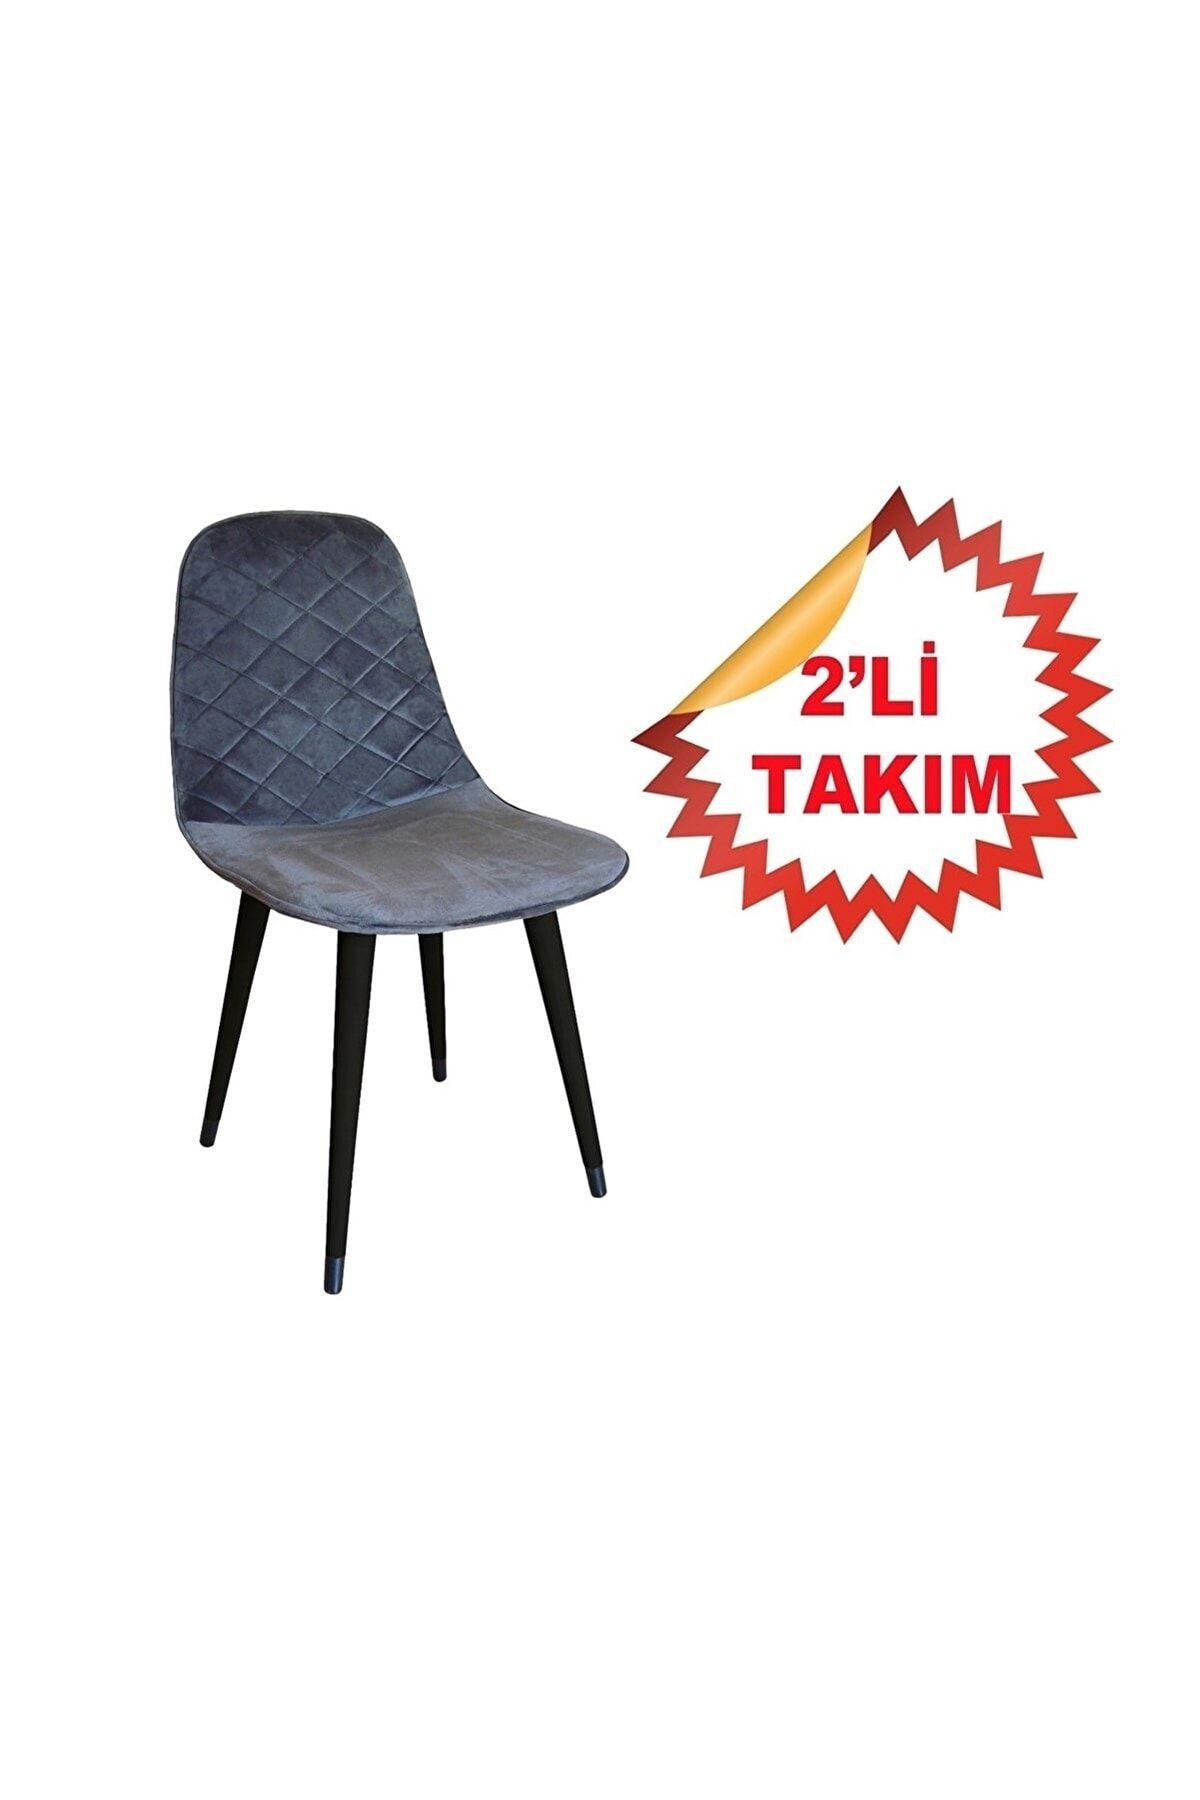 NETAKS Estelia Truva Metal Ayaklı Sandalye 2'li Takım